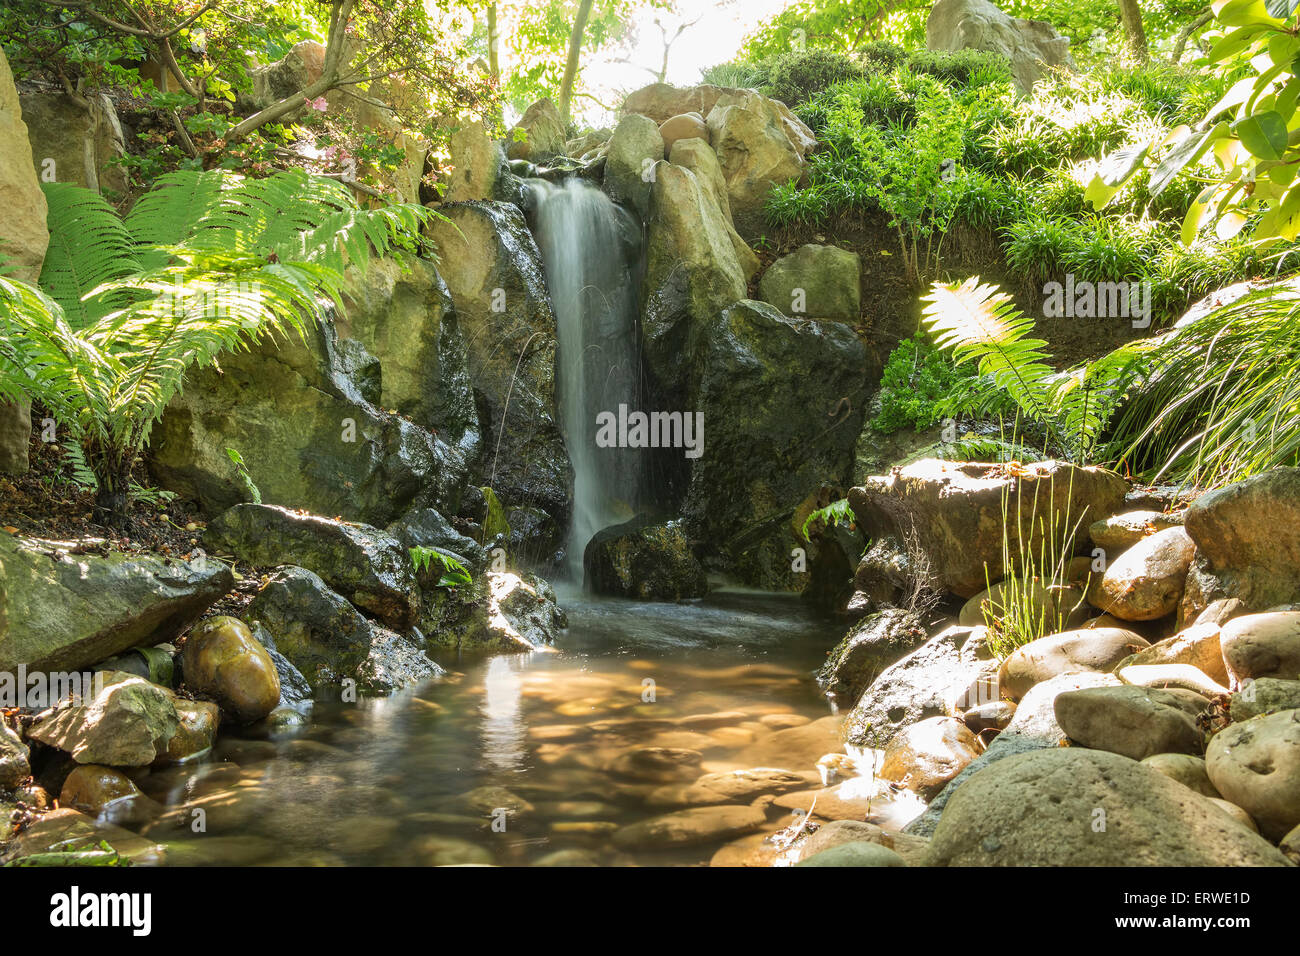 Schöner Wasserfall in einem japanischen Garten. Langzeitbelichtung Foto. Stockfoto